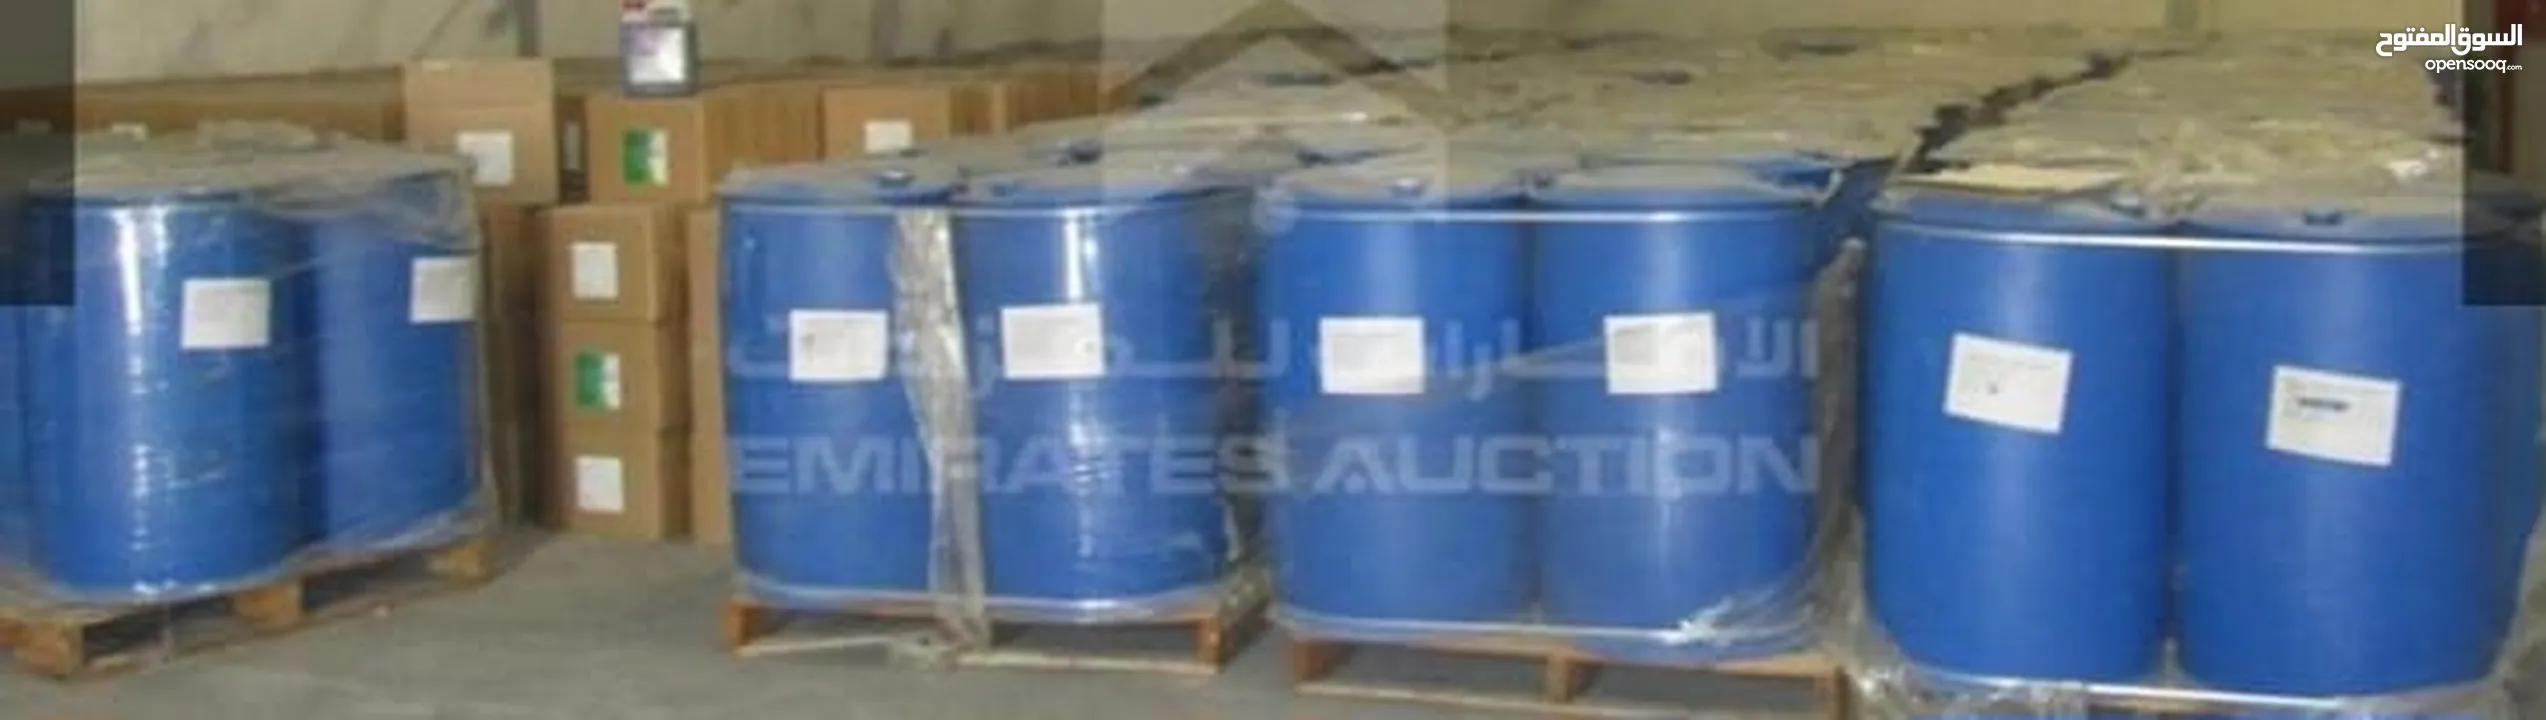 Acetic Acid  cleaning material 210 KG  one drum  for sale .Price 350 per drum   مادة التنظيف للبيع